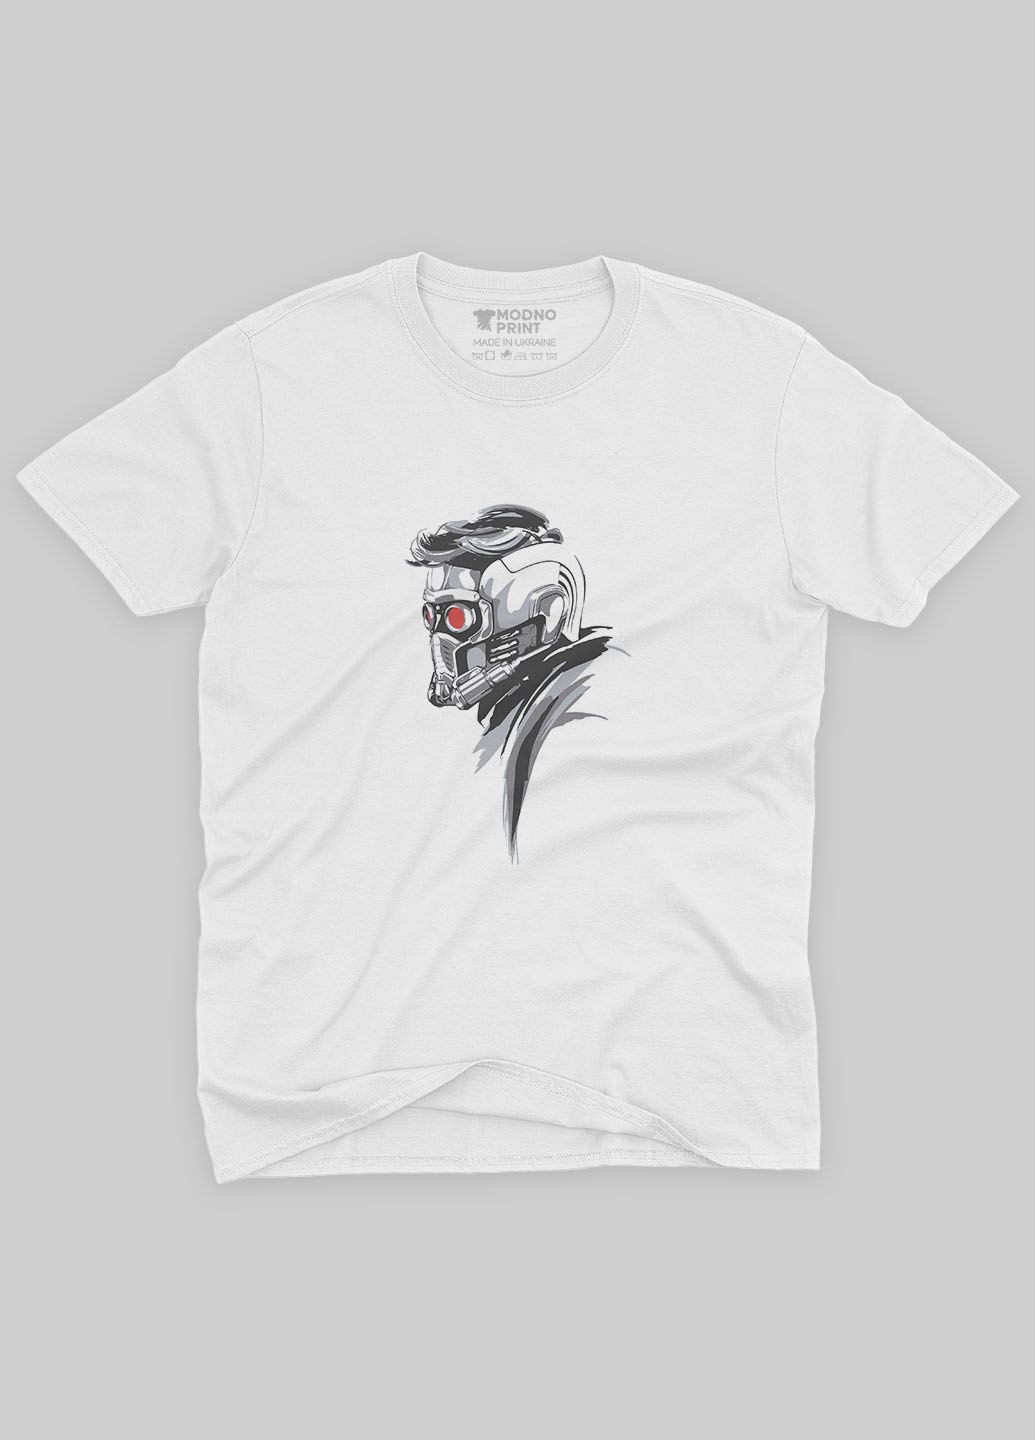 Белая демисезонная футболка для мальчика с принтом супергероев - стражи галактики (ts001-1-whi-006-017-012-b) Modno